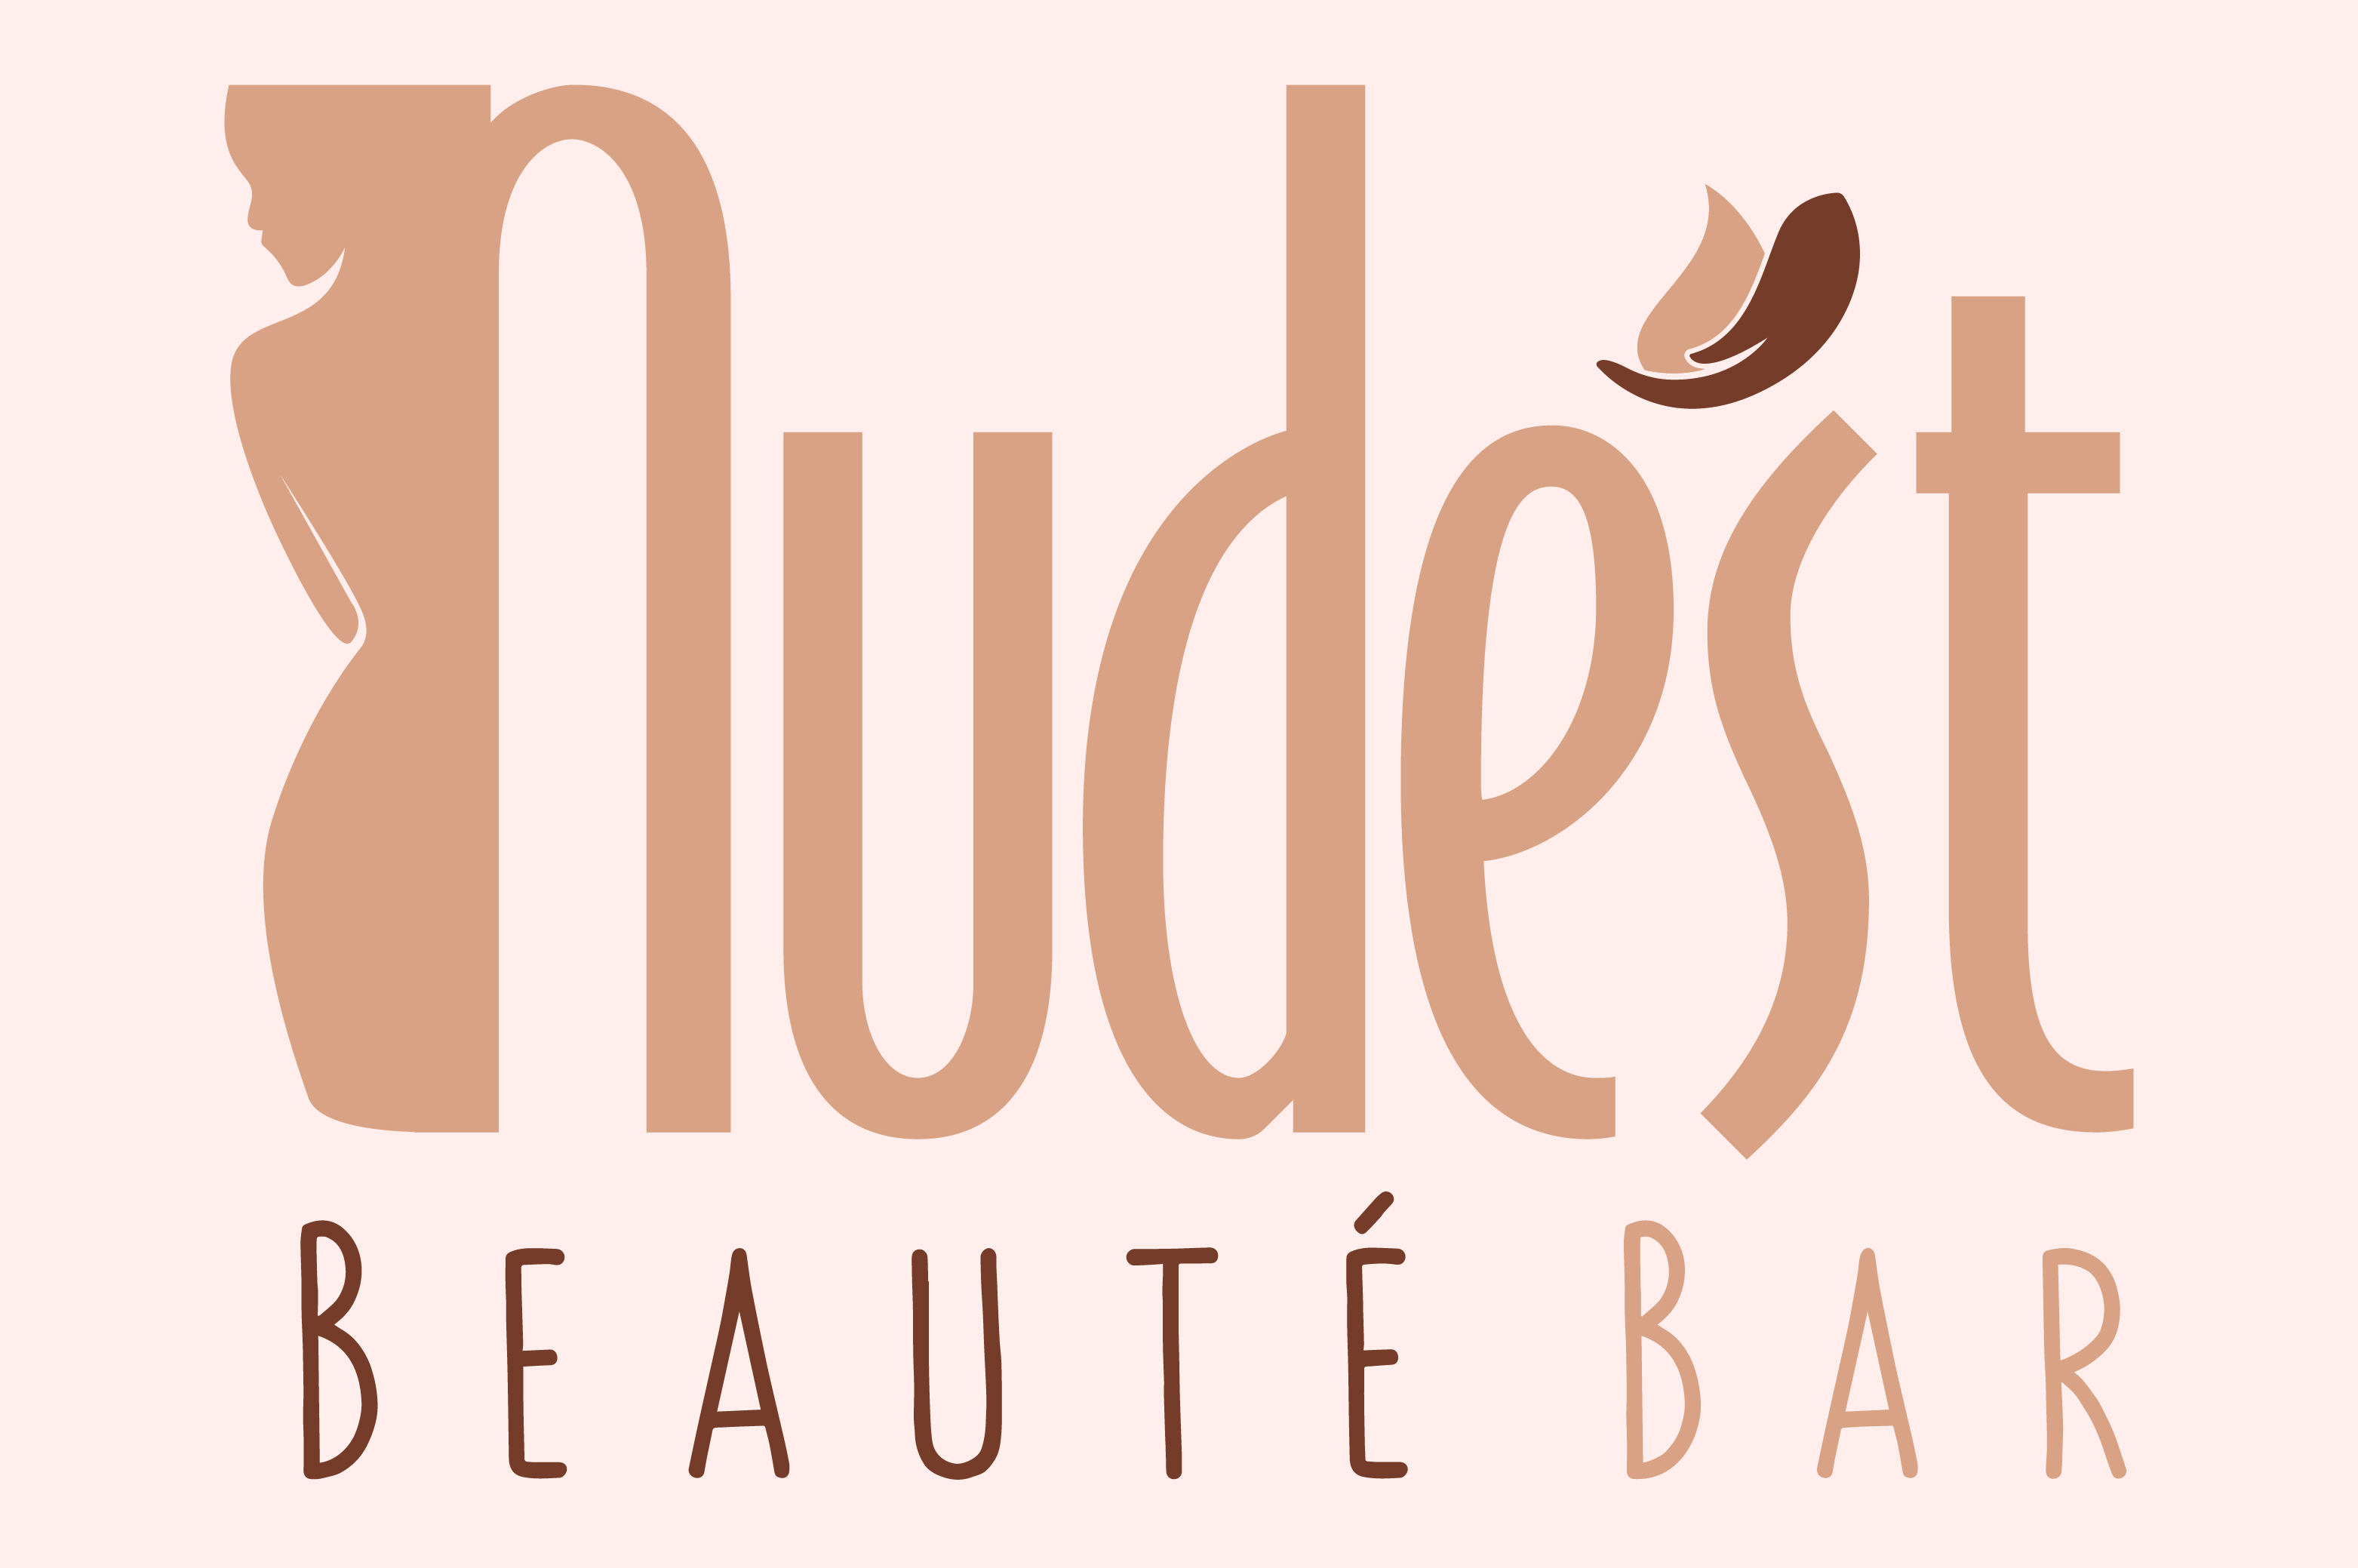 Nude’st Beauté Bar